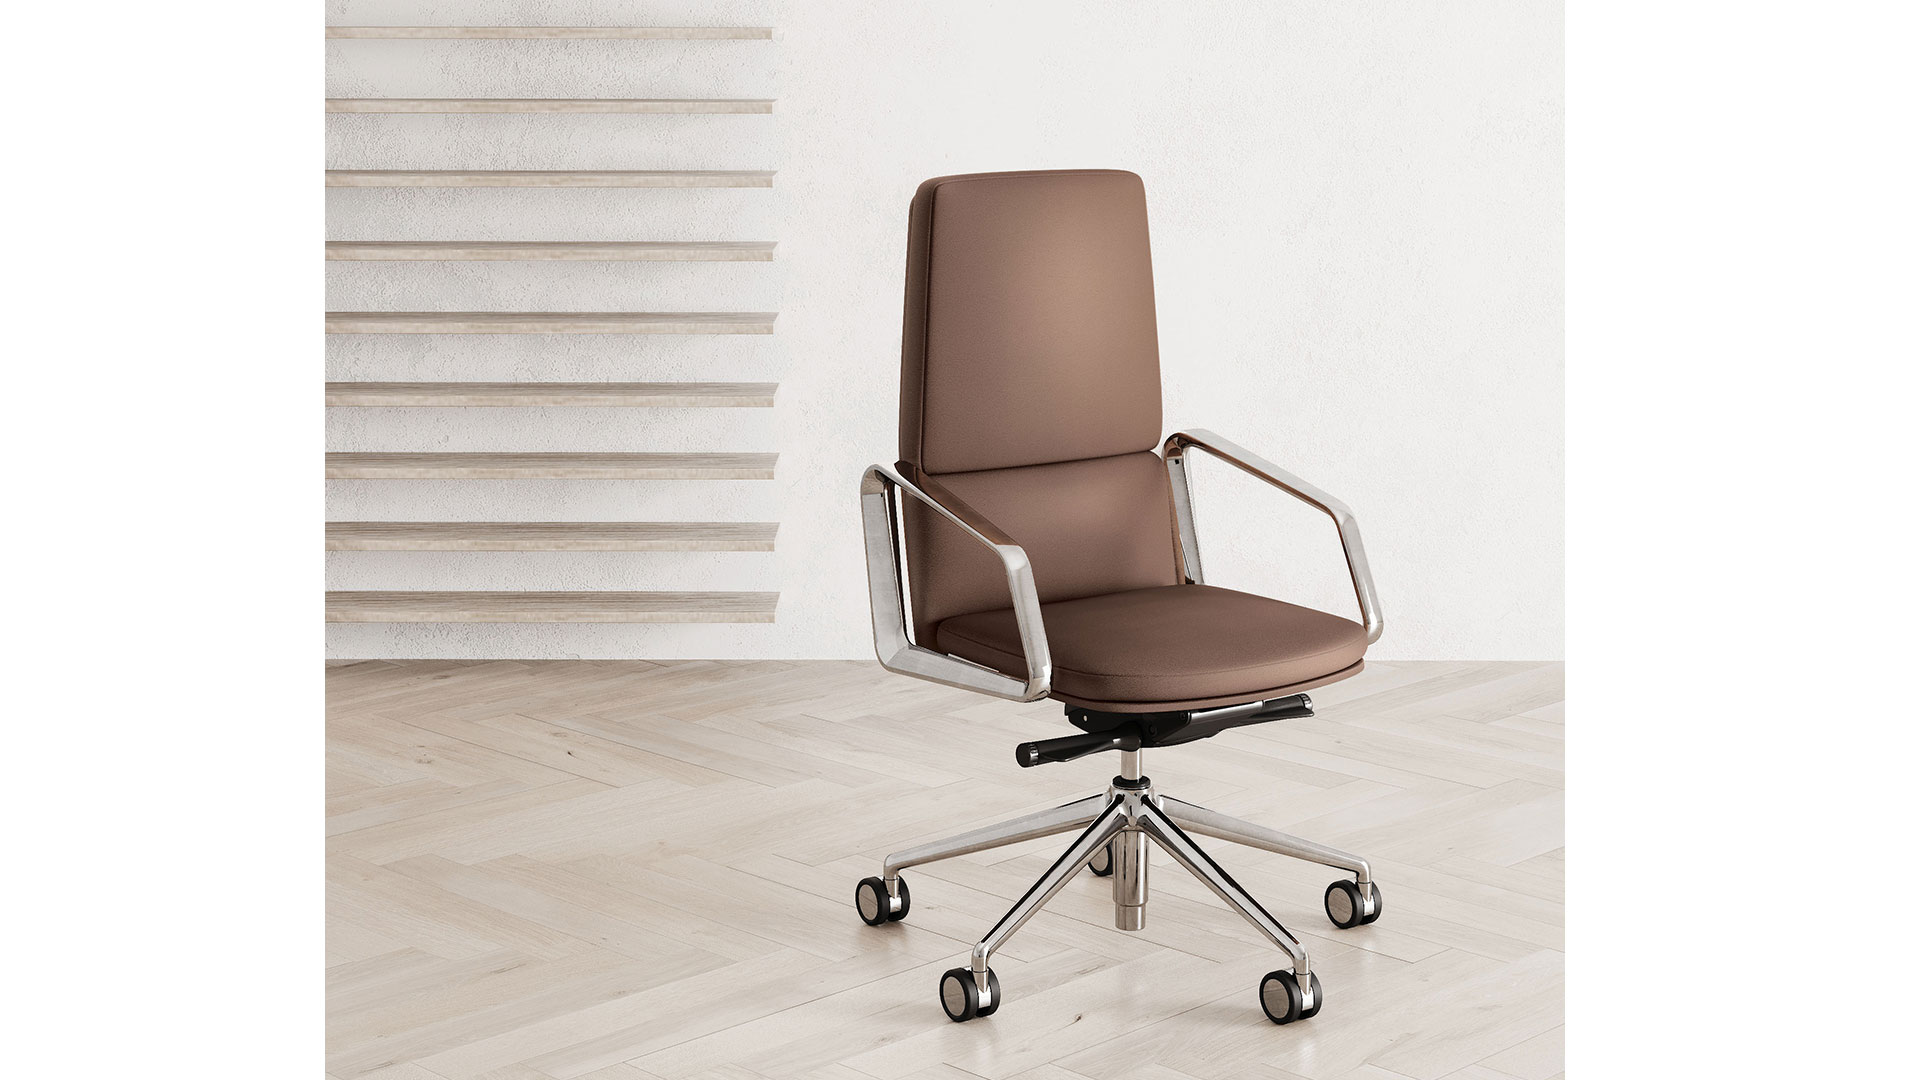 Конусообразная спинка - выдающаяся особенность офисного кресла